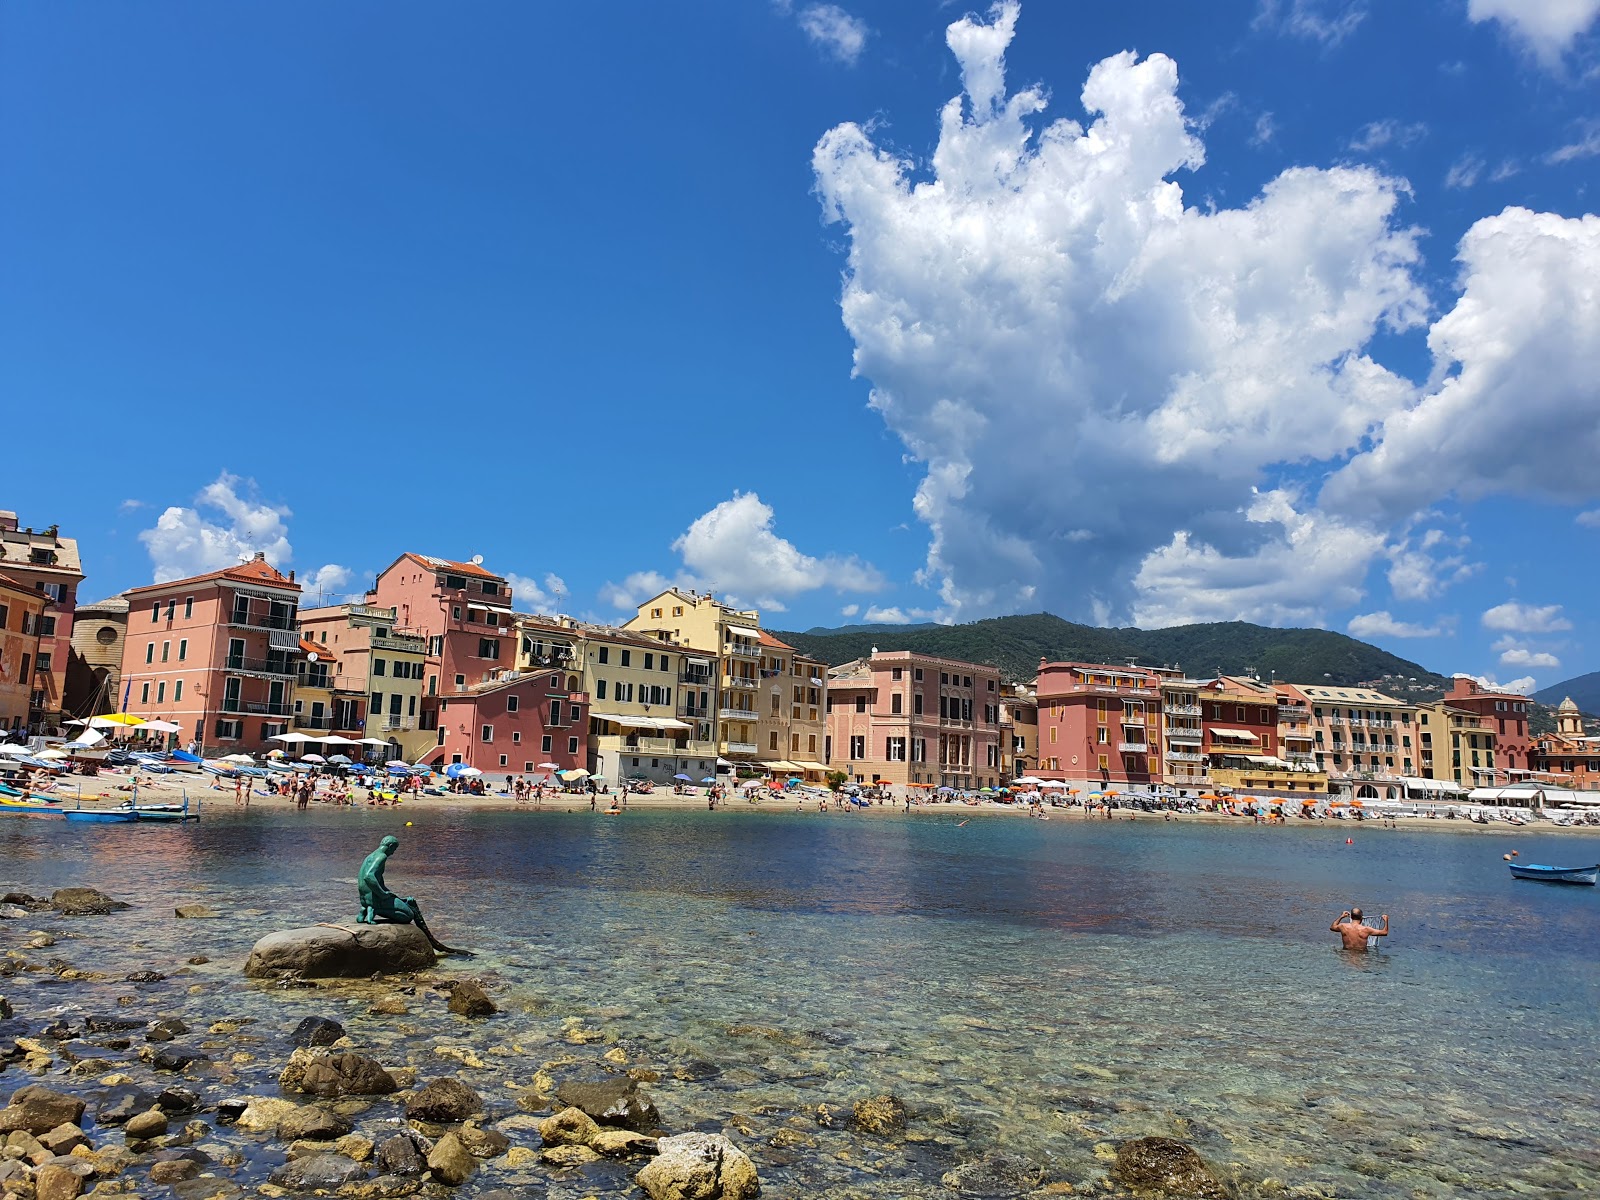 Spiaggia Baia del Silenzio'in fotoğrafı imkanlar alanı